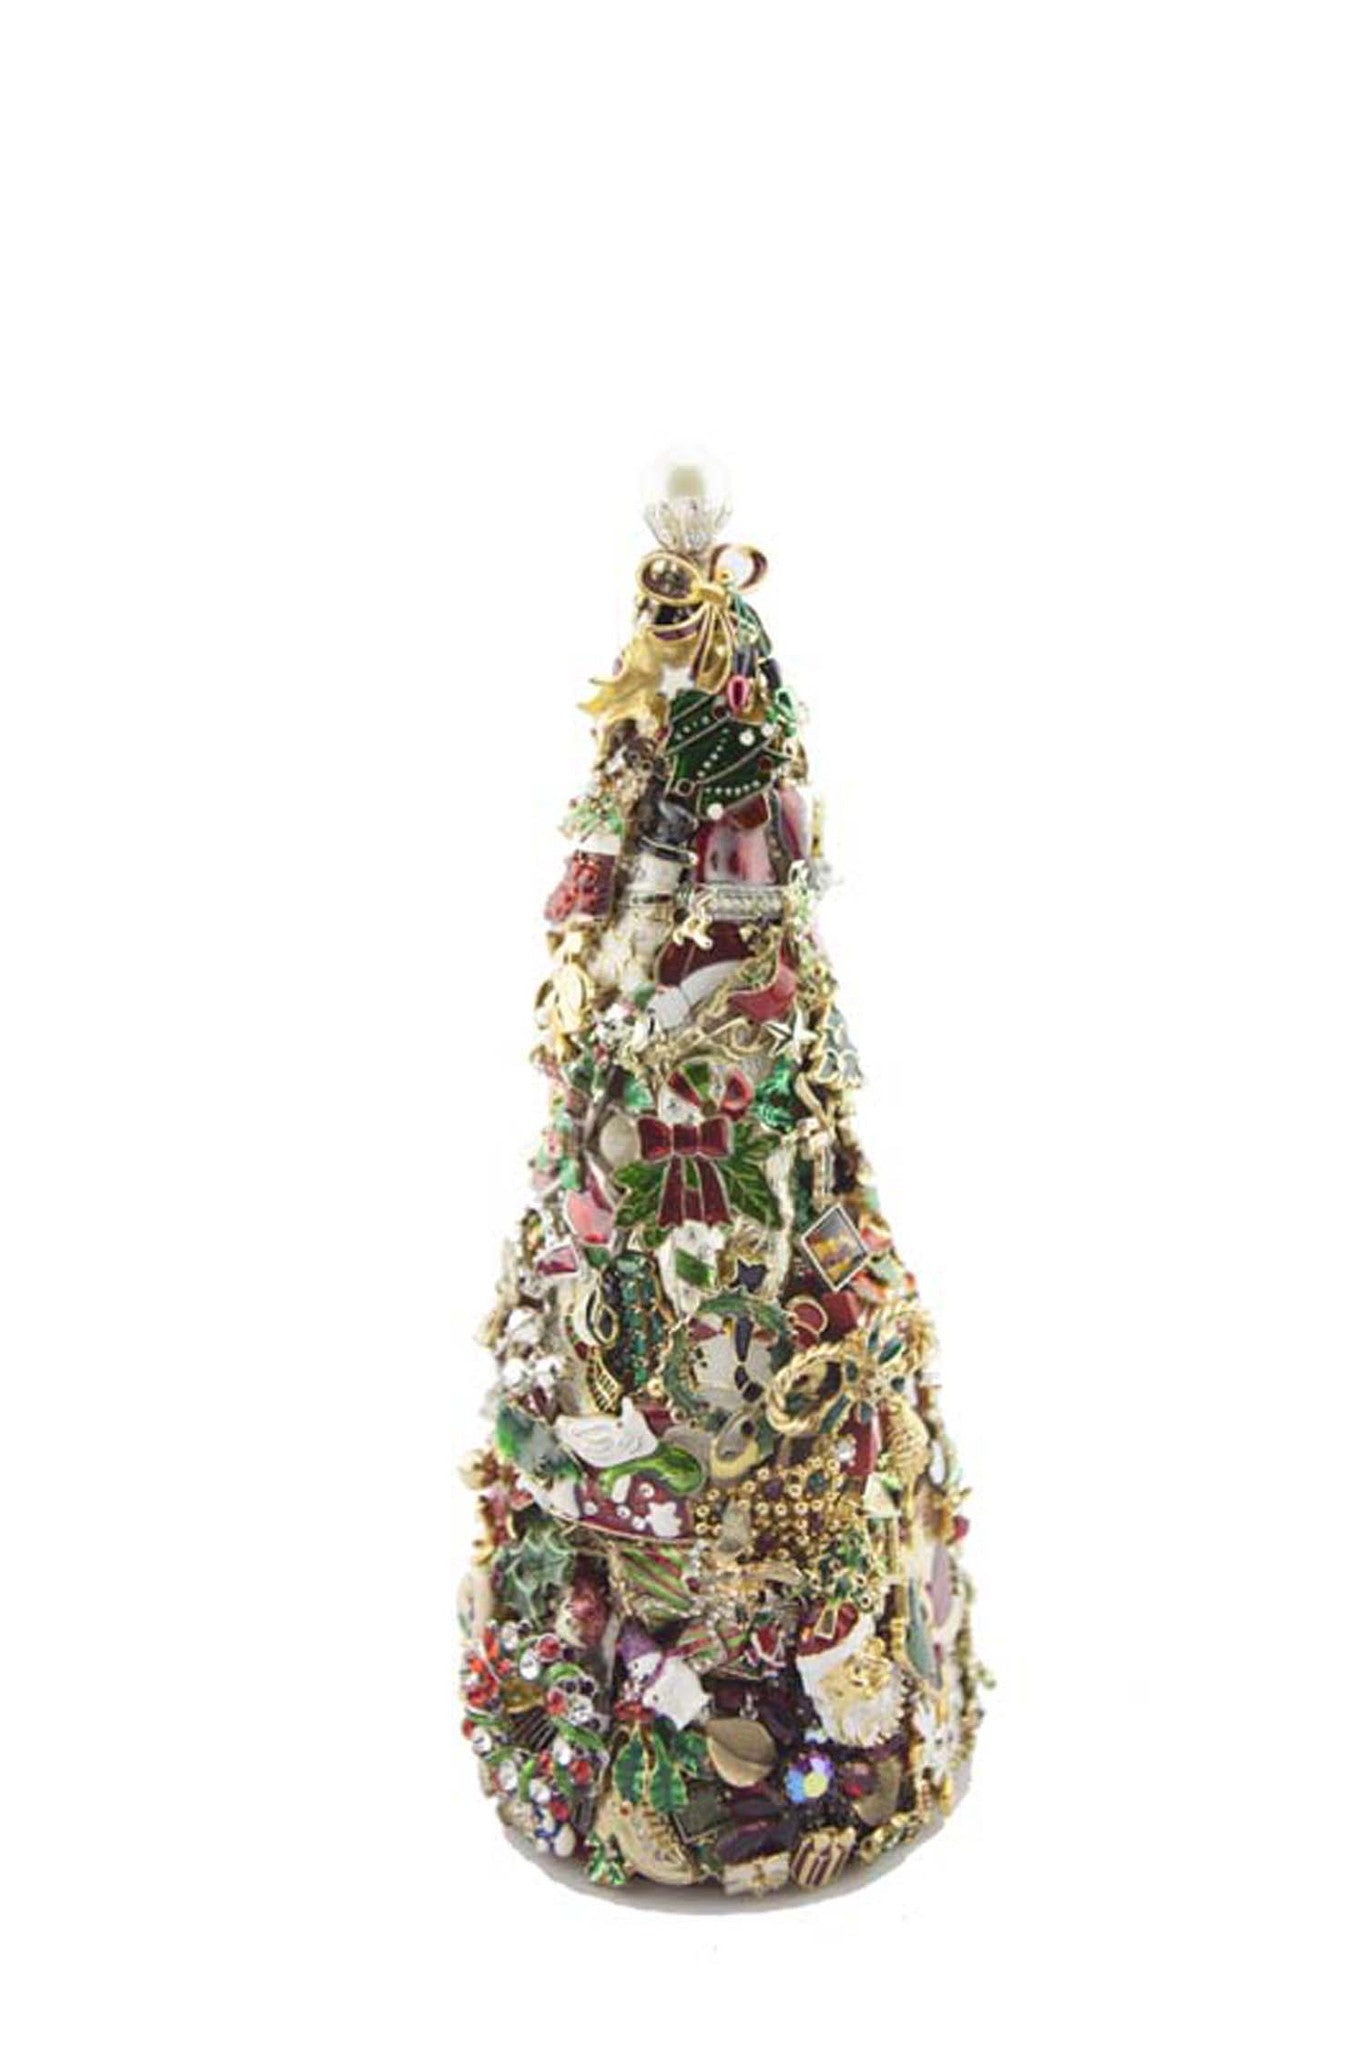 Beyond The Jewel Box-12" Tree/Christmas Colors